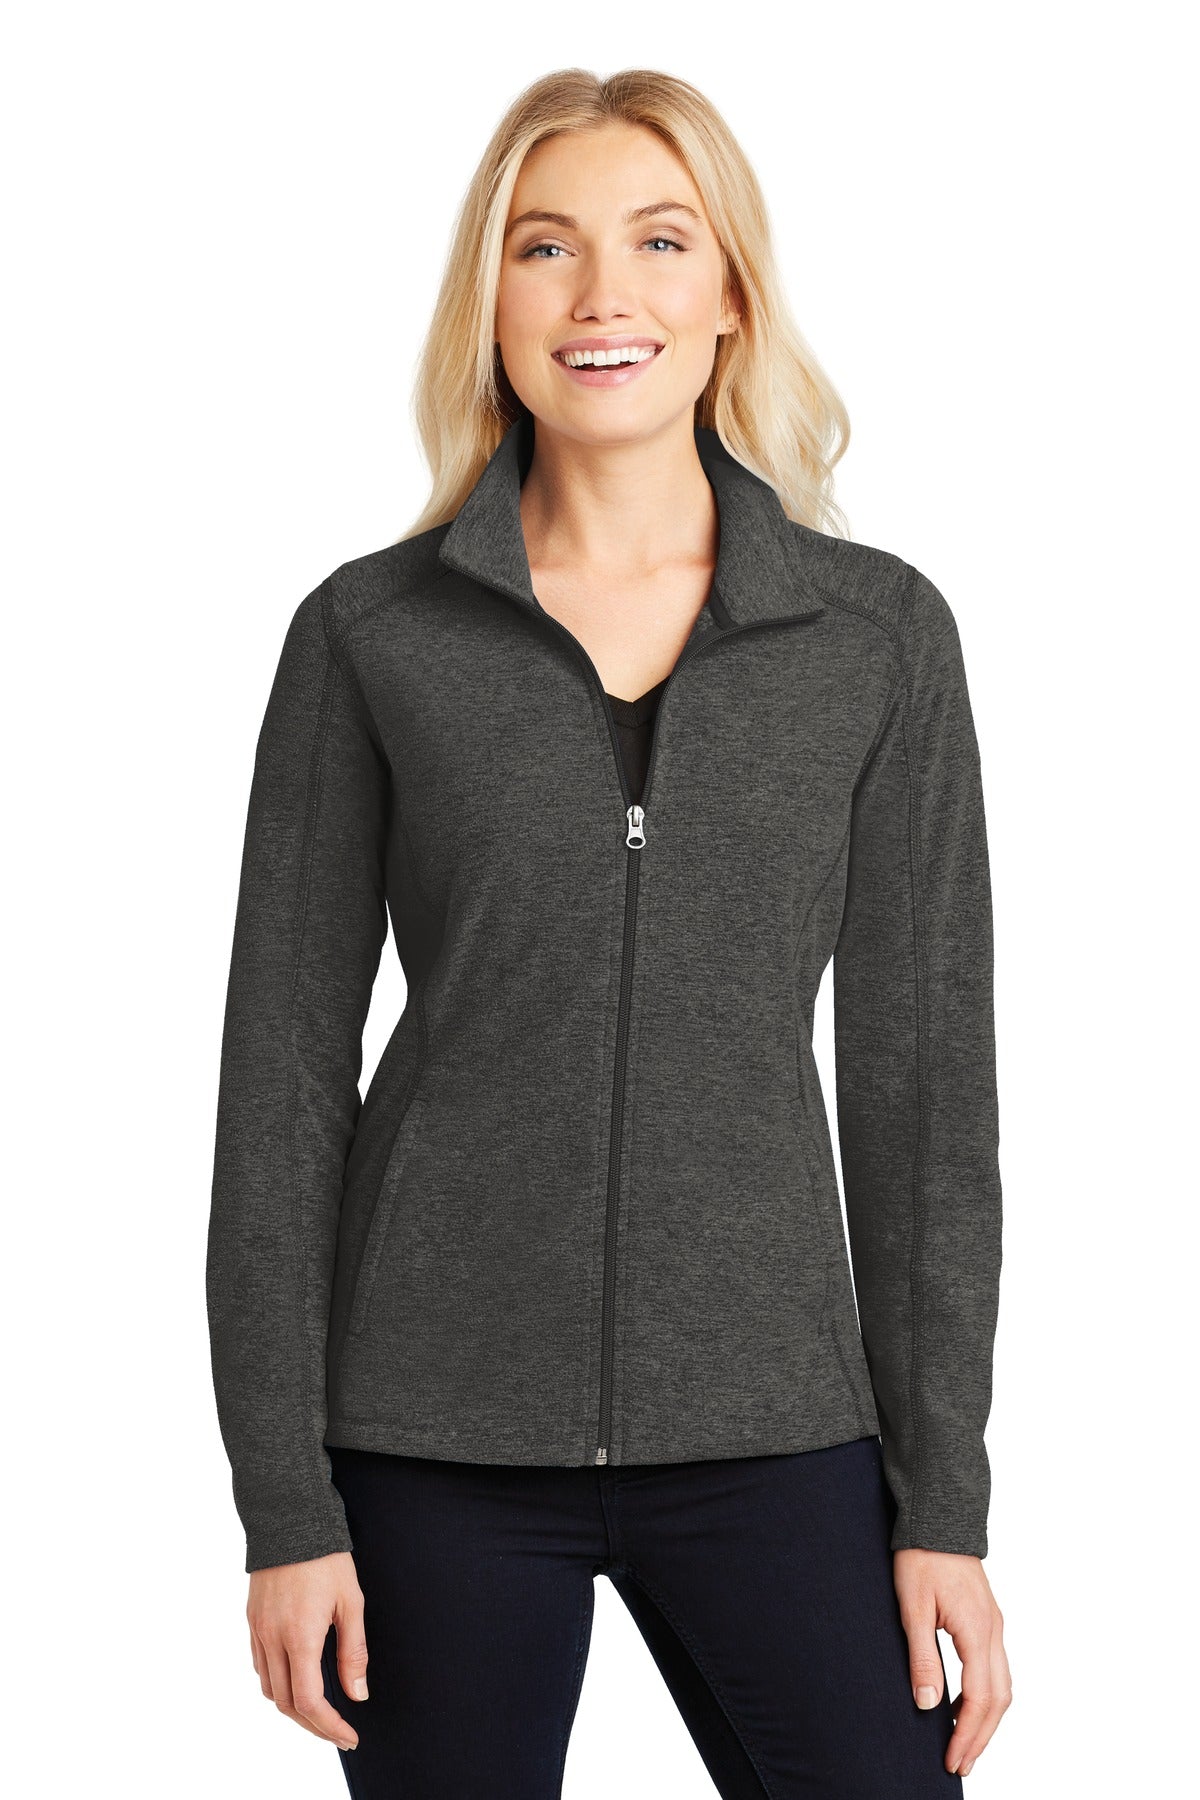 Port Authority® Ladies Heather Microfleece Full-Zip Jacket. L235 - DFW Impression